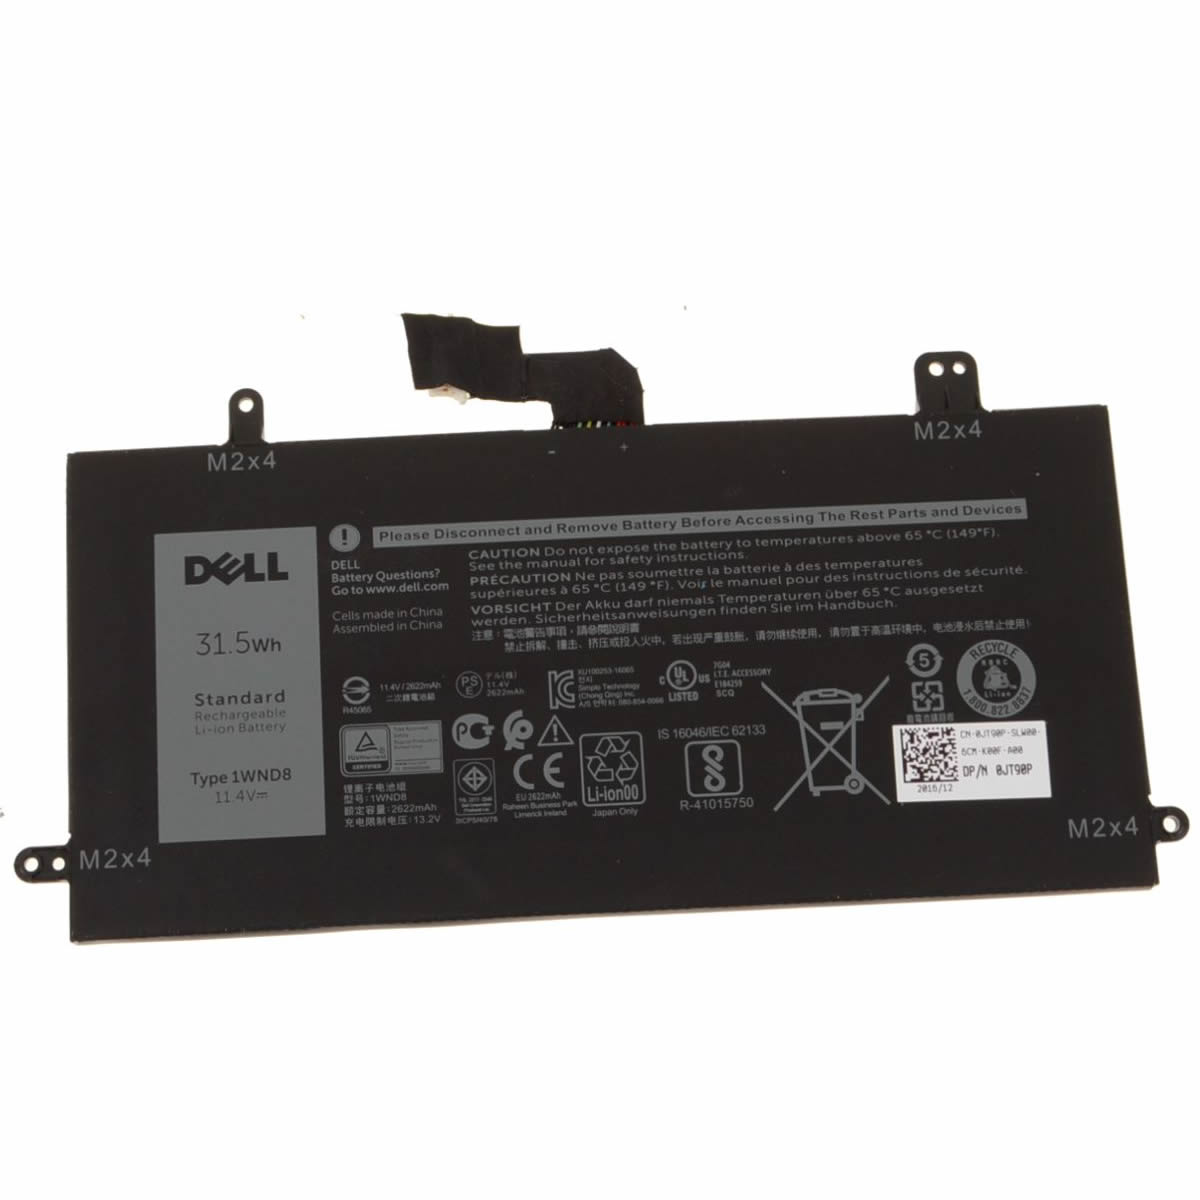 Batterie originale Dell 1WND8 11.4V 2622mAh, 31.5Wh pour ordinateur portable Dell Latitude 5285, Latitude 12 5285 séries